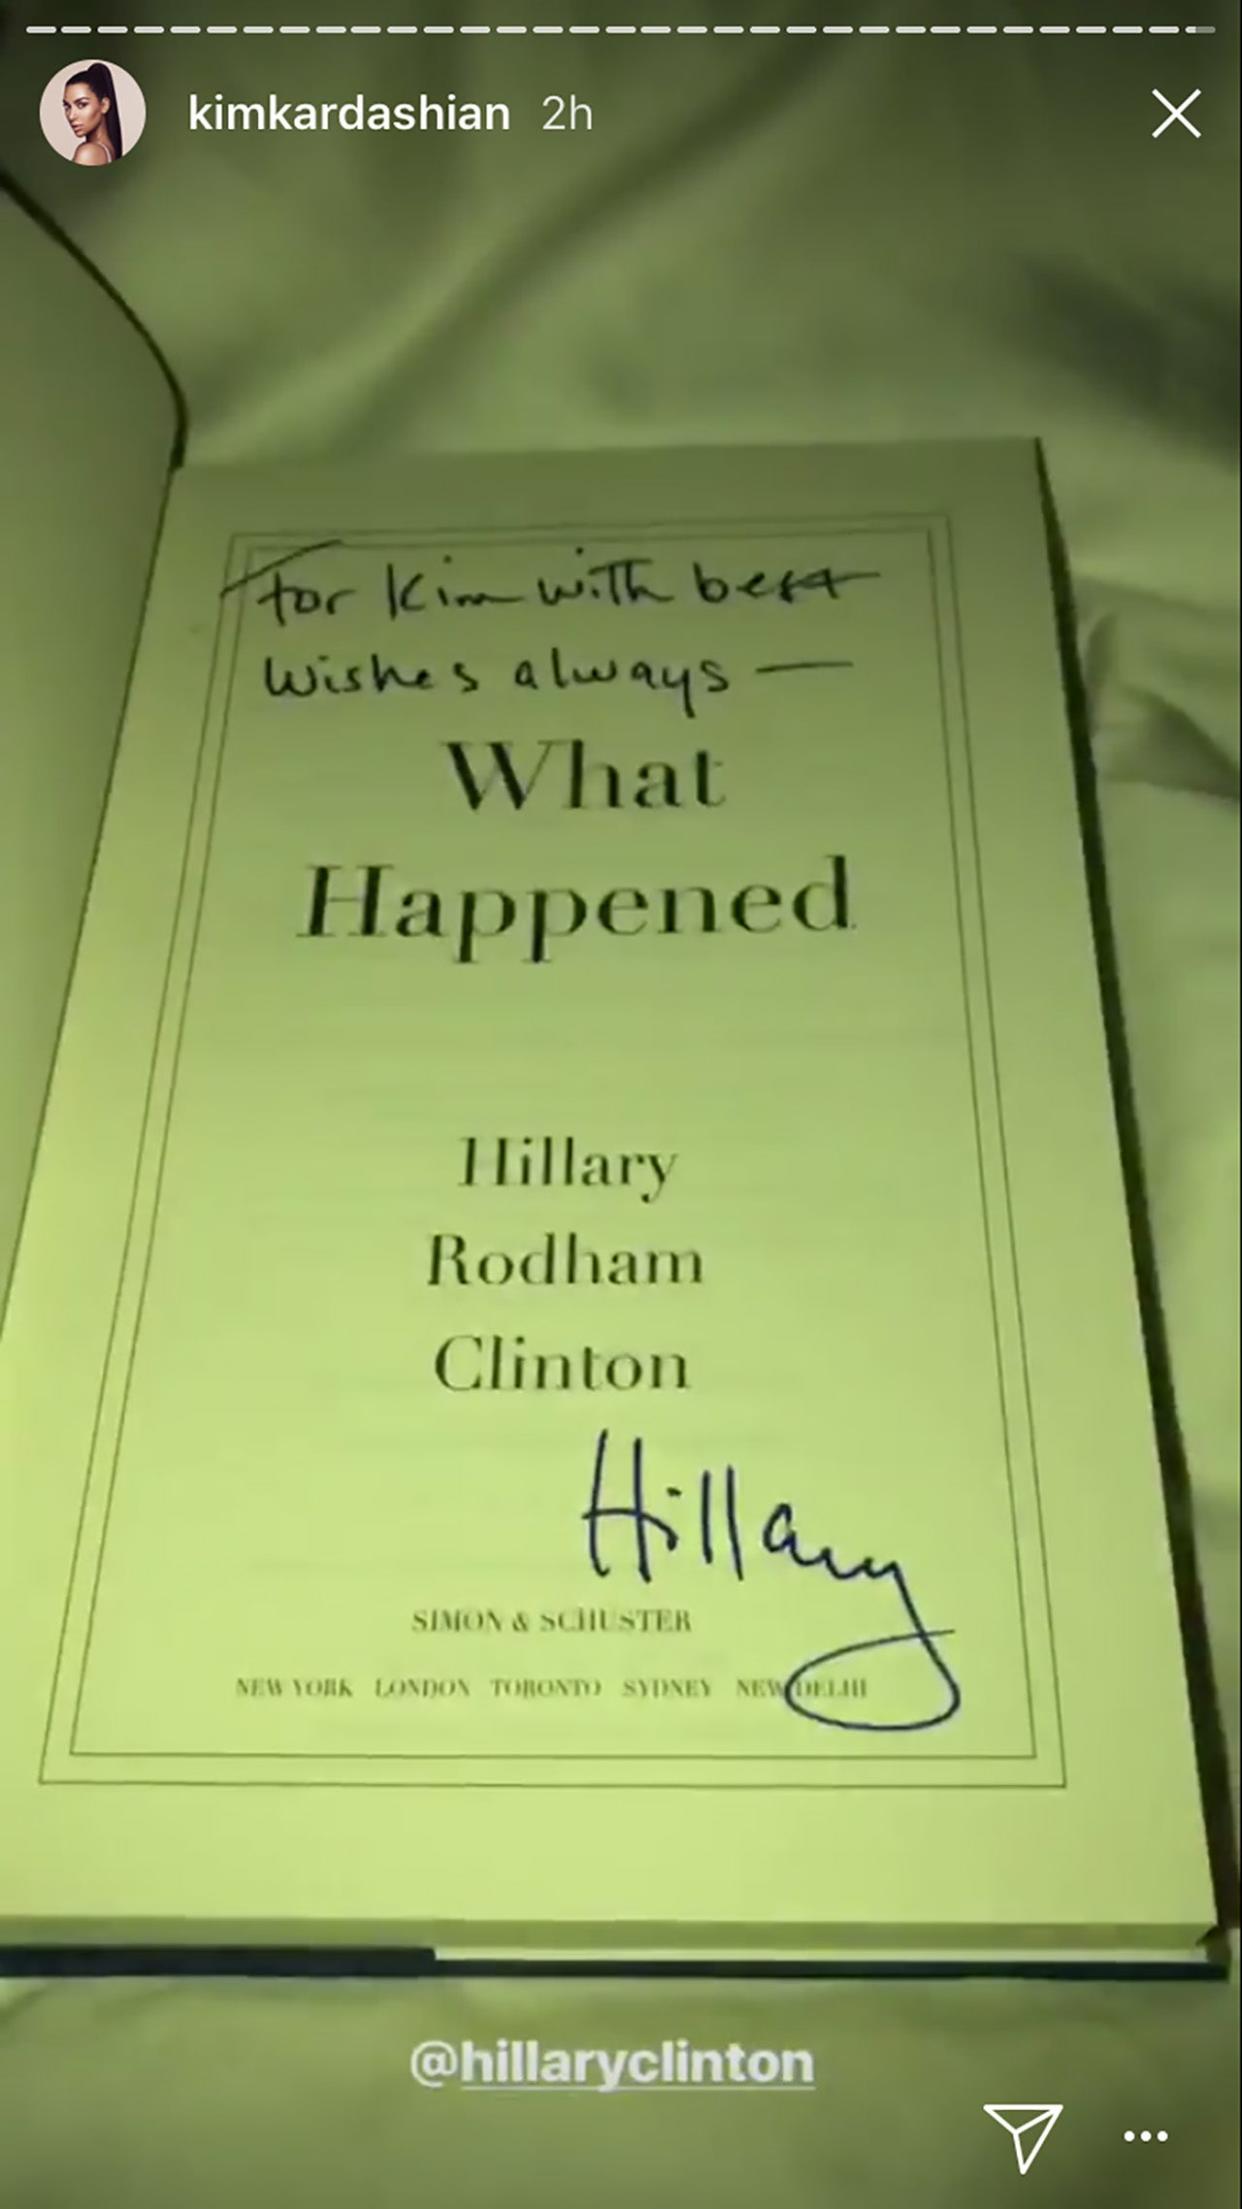 Hillary Clinton signs book for Kim Kardashian